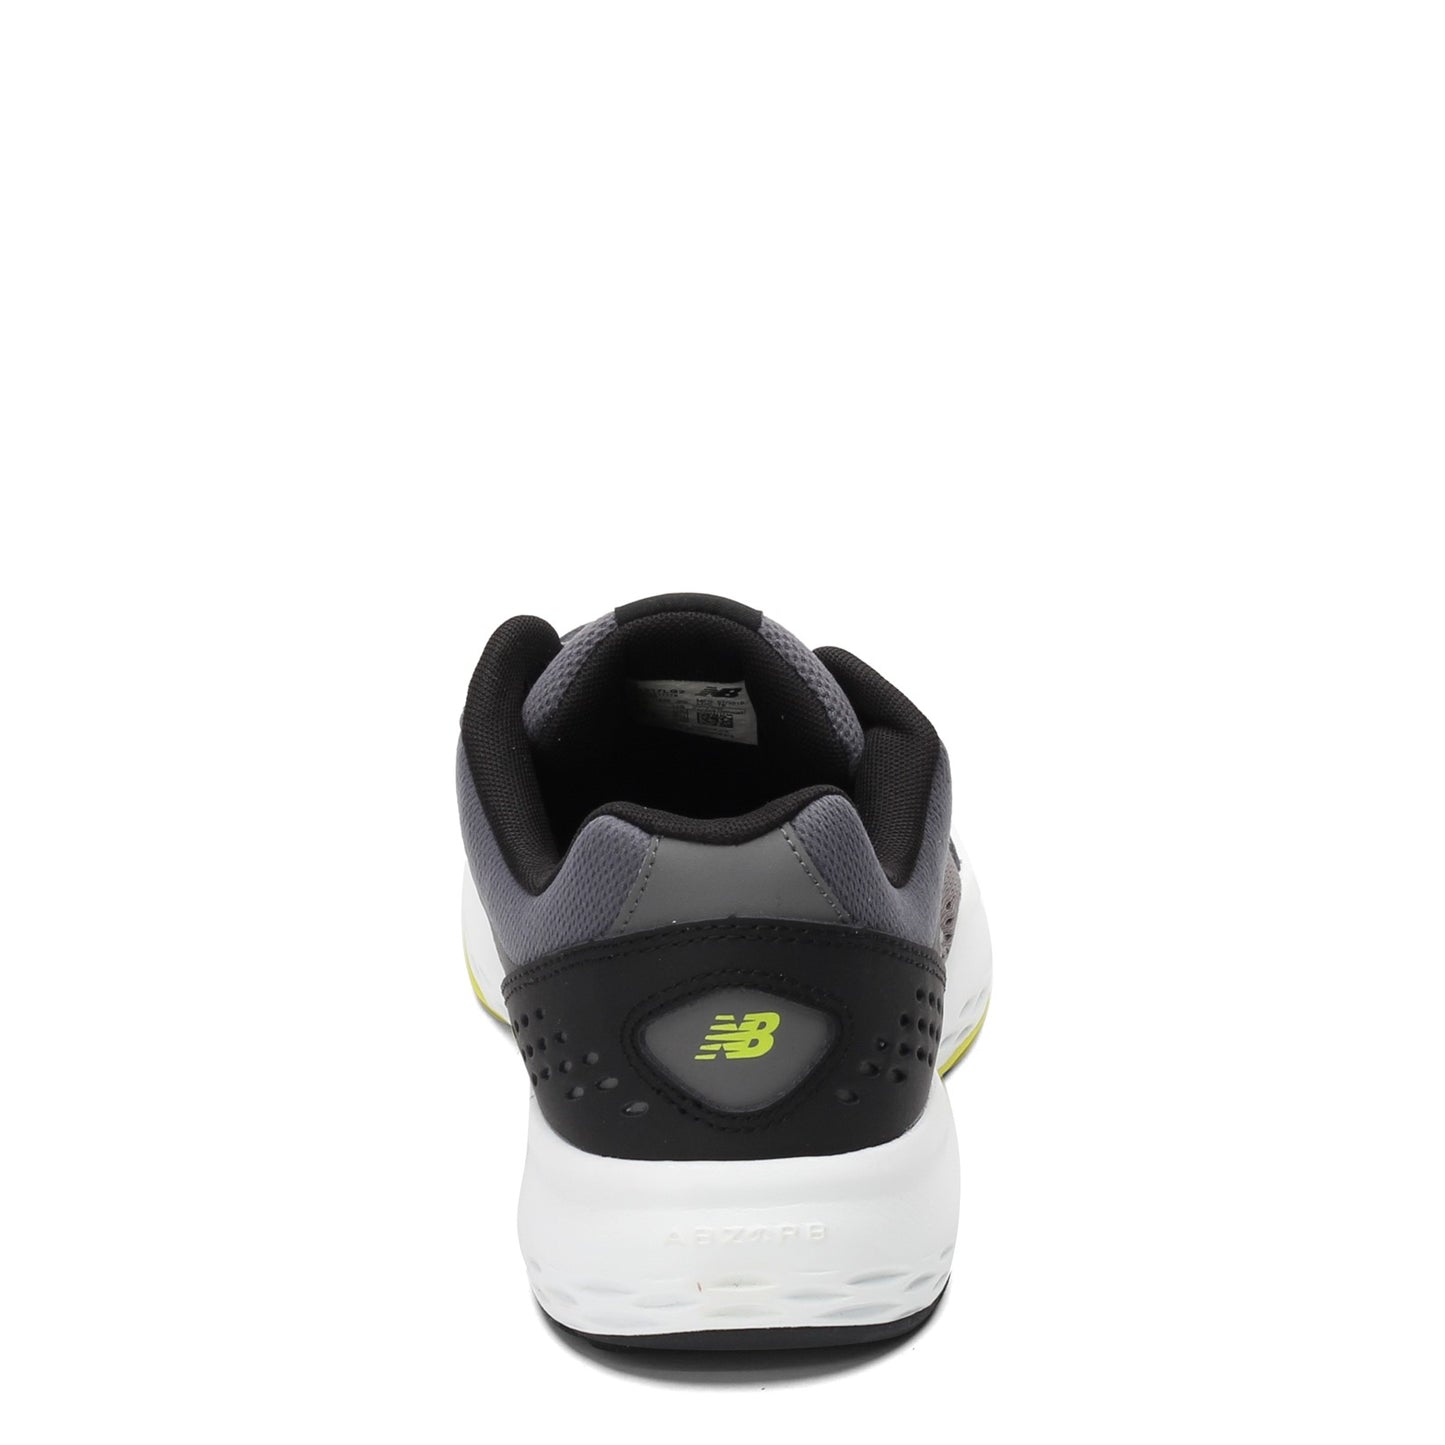 Peltz Shoes  Men's New Balance 517v2 Crosstraining Sneaker GRAY MX517LG2